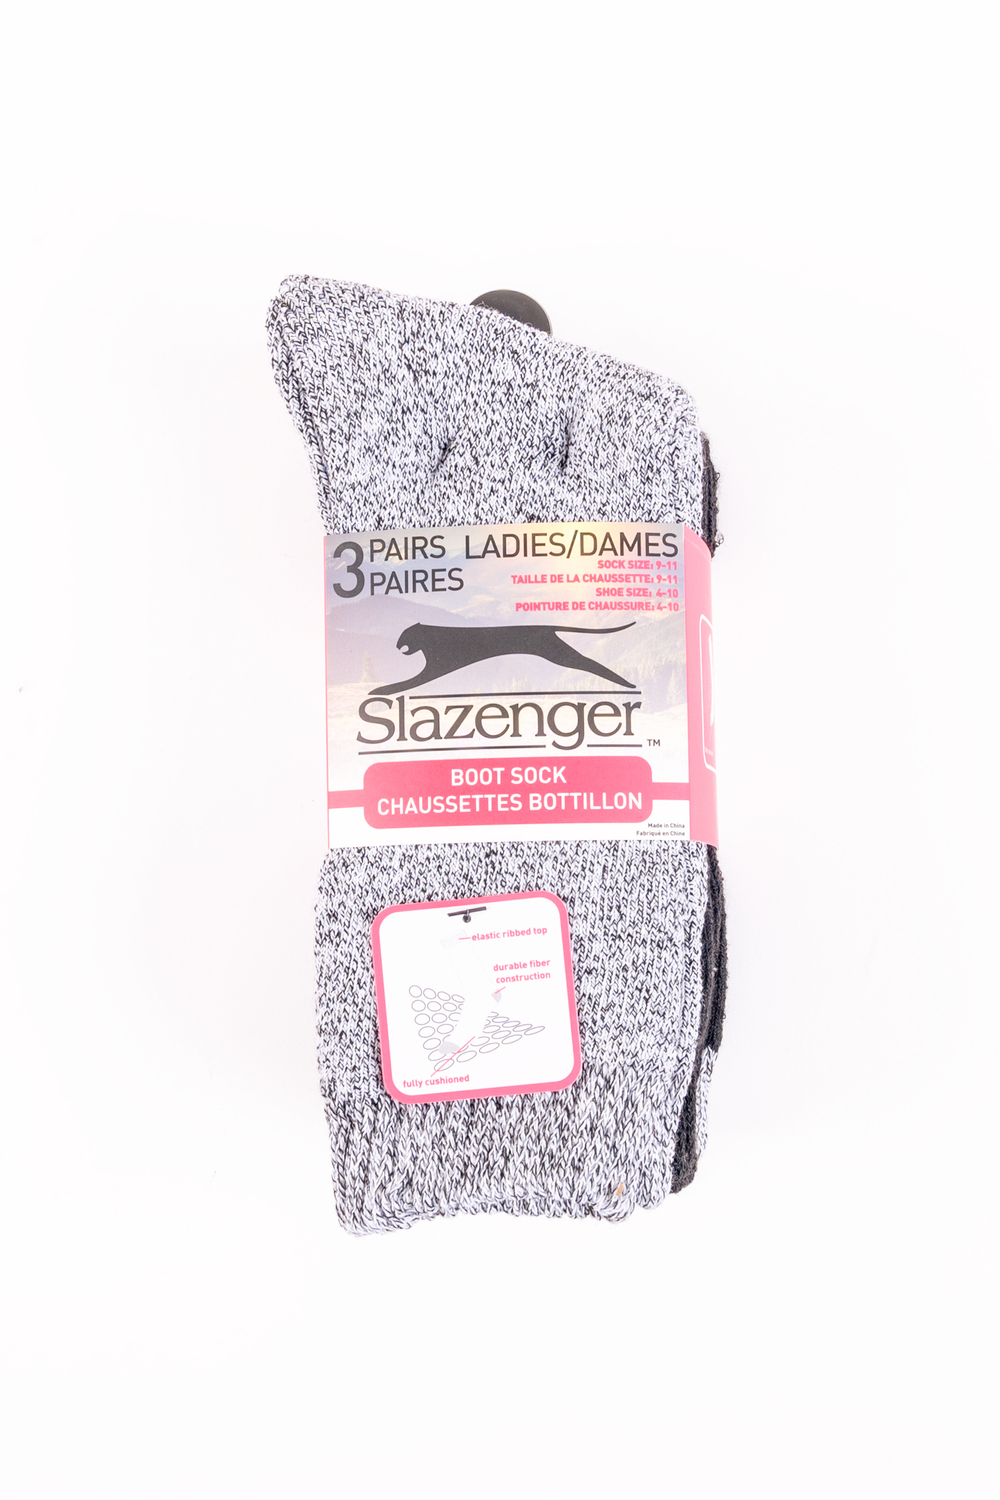 Slazenger - Asst. color cotton boot socks - 3 pairs